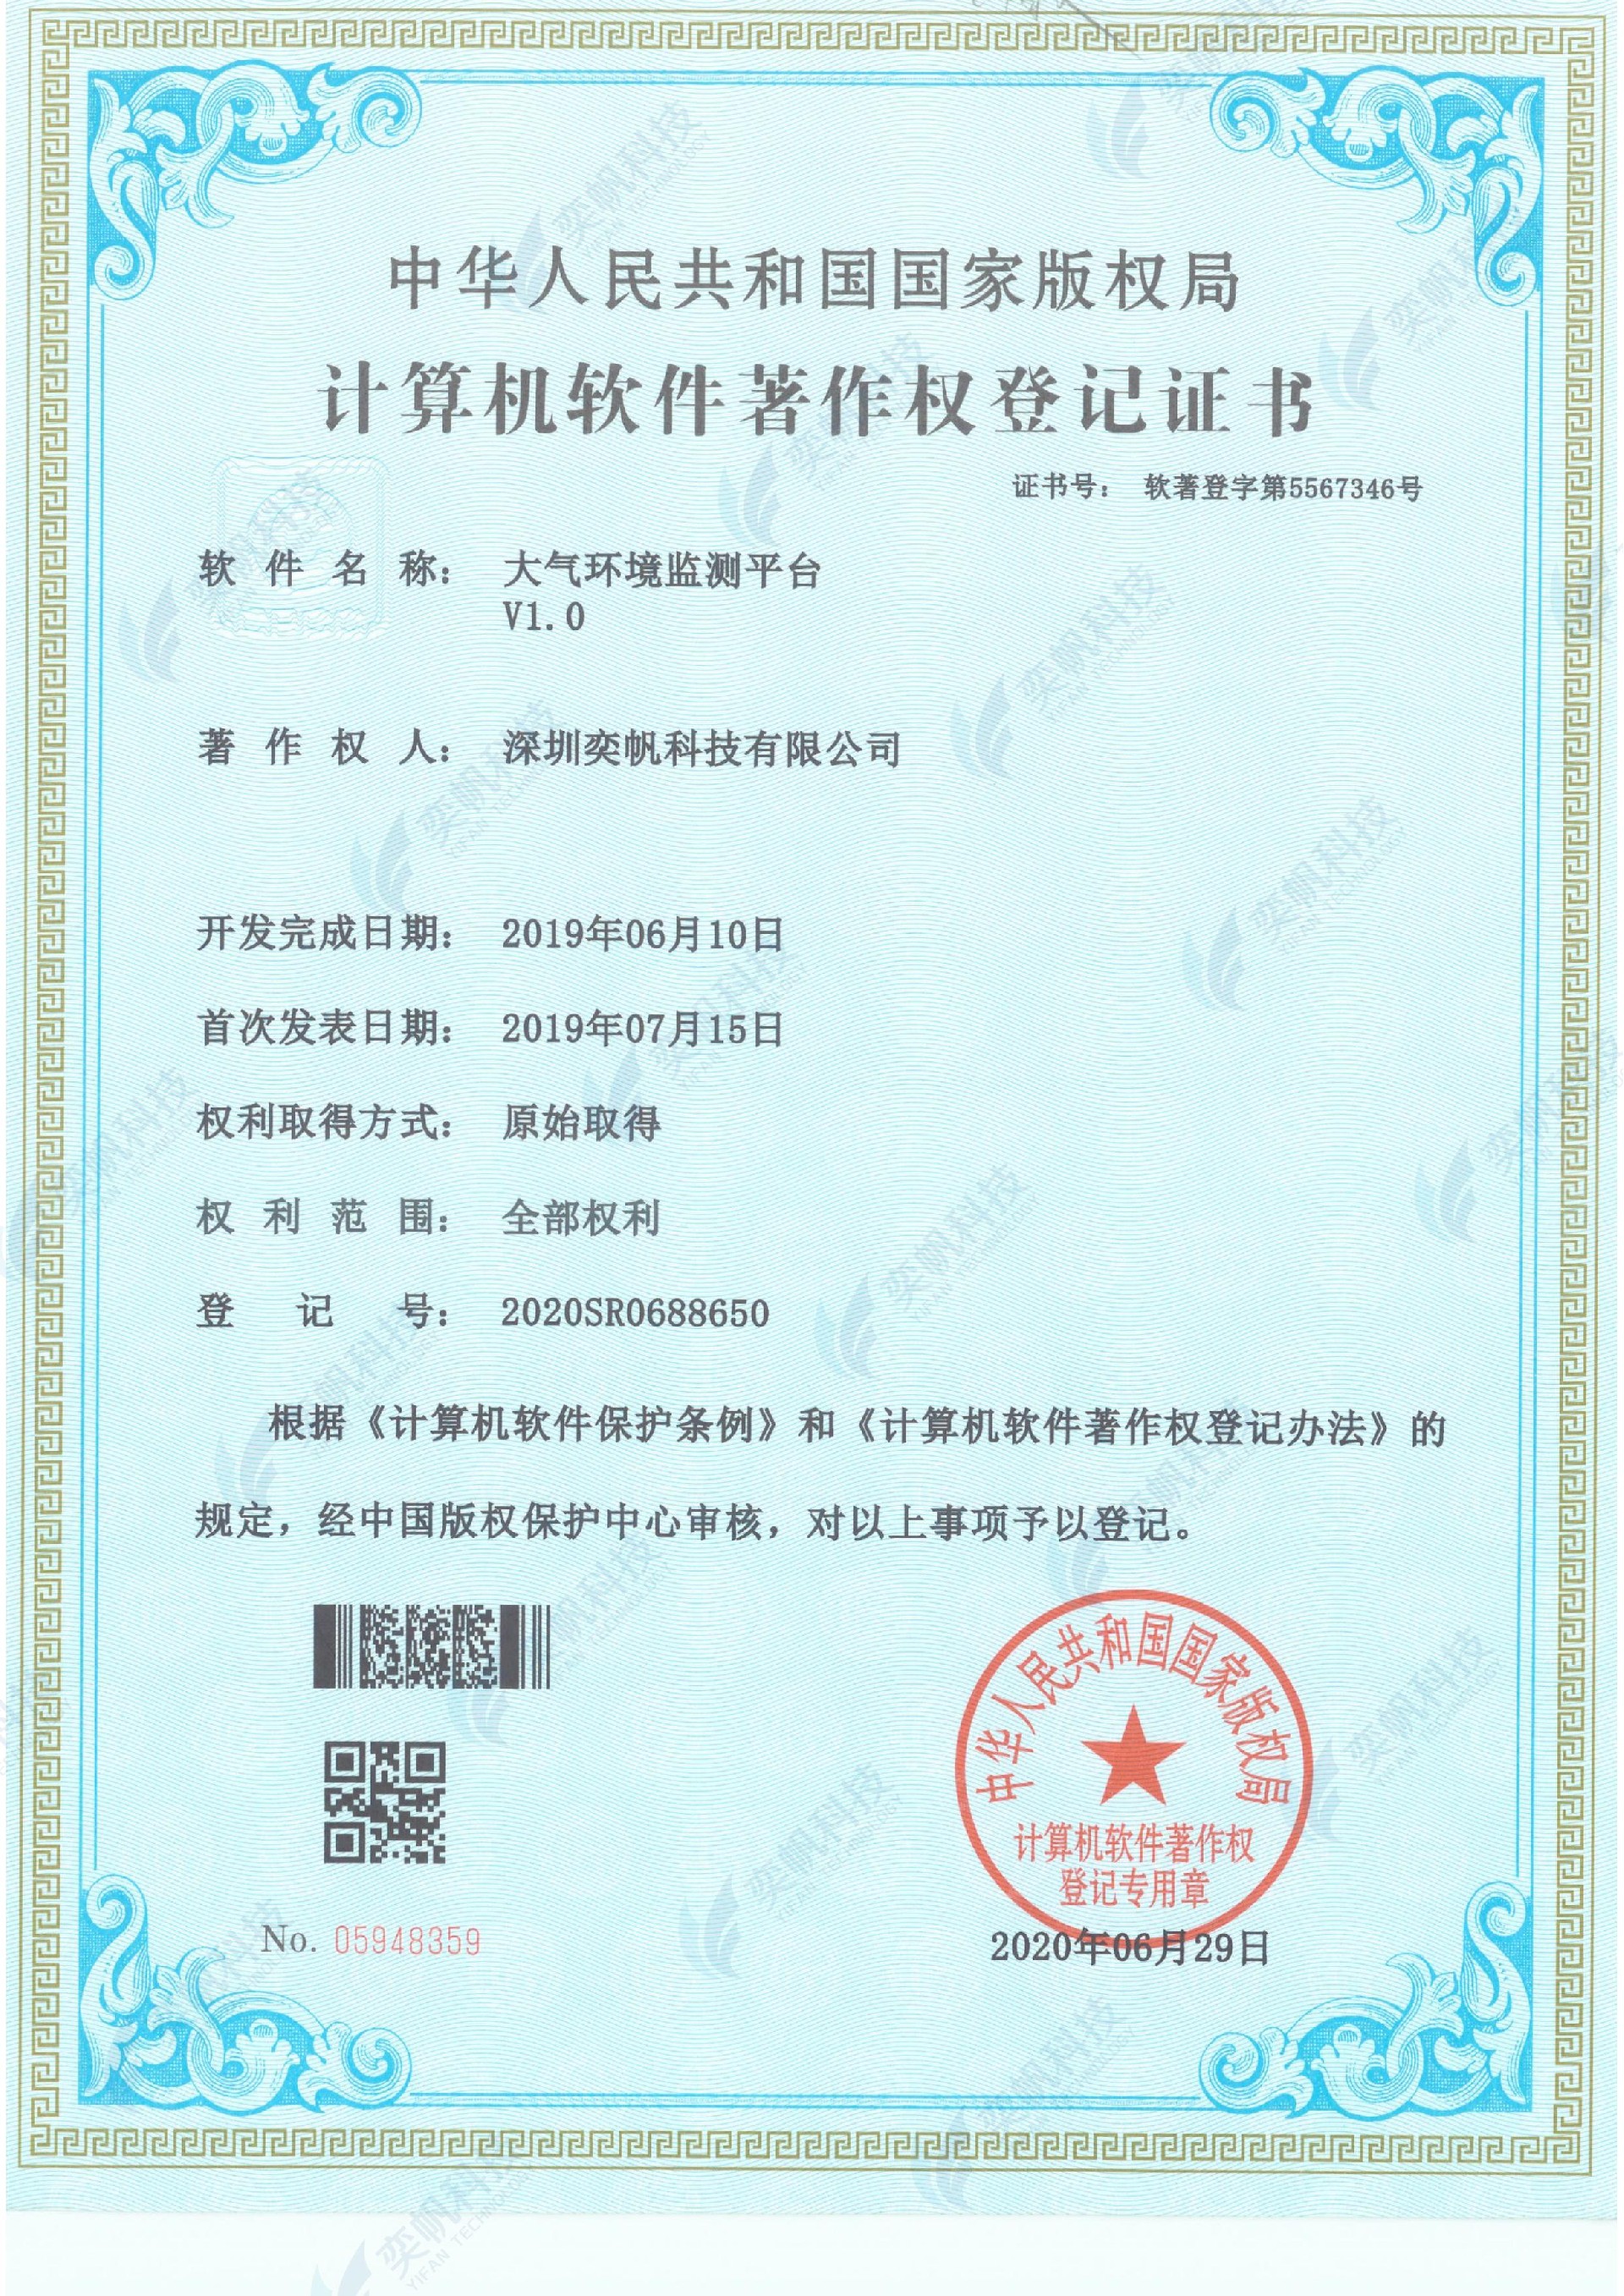 大气环境监测平台-计算机软件著作权登记证书_00.jpg